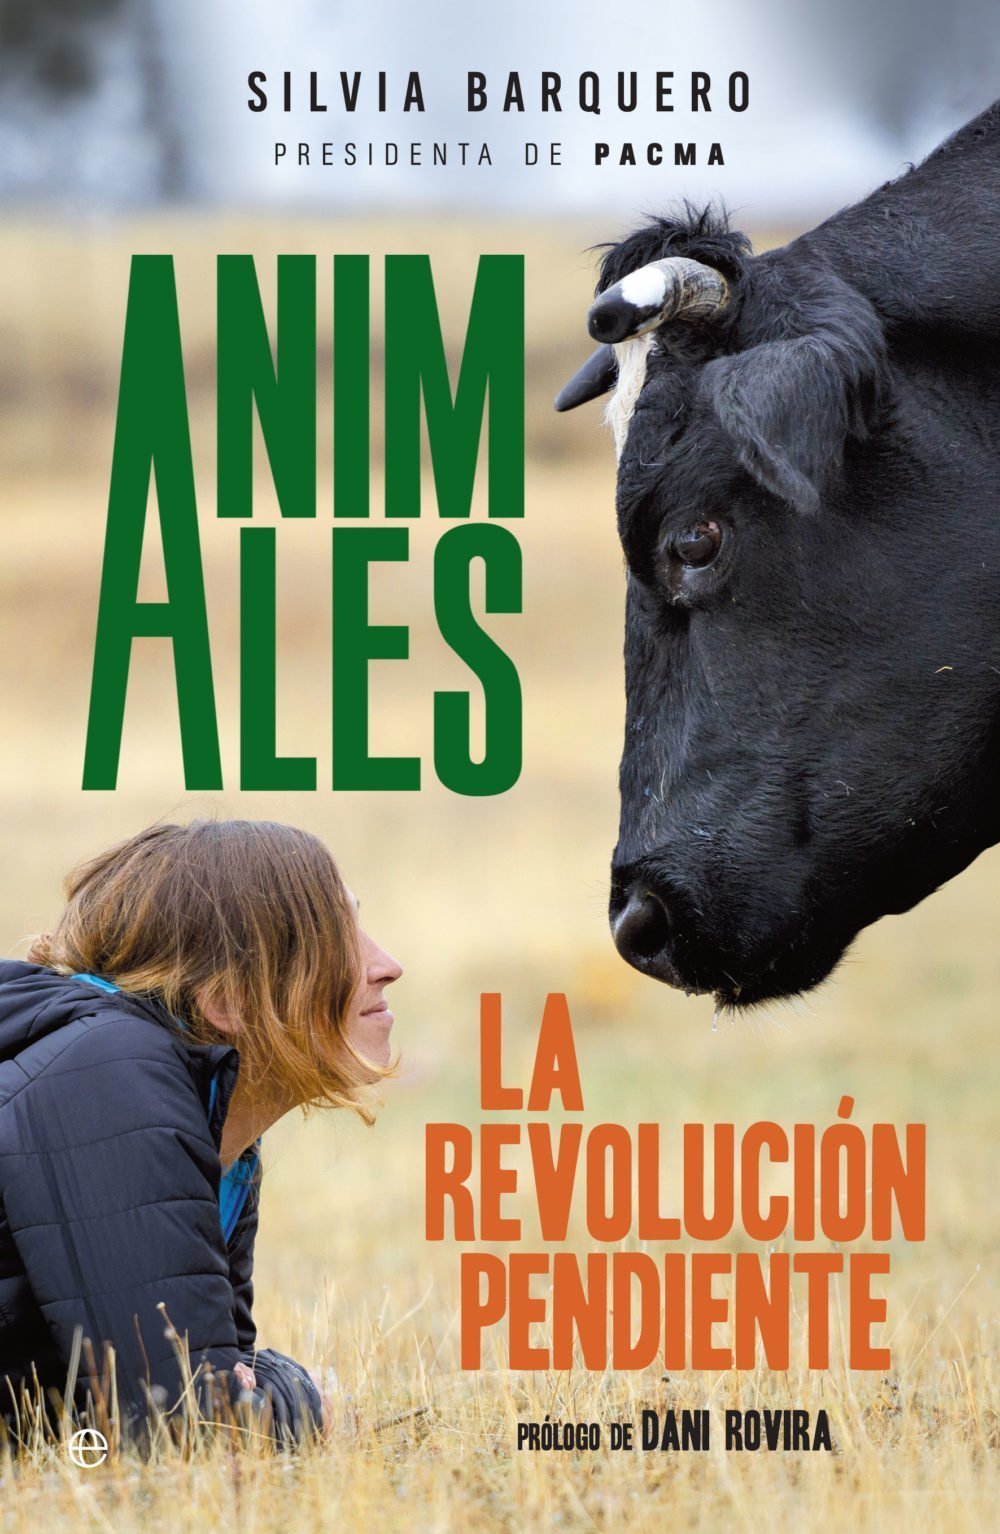 Prólogo de Dani Rovira y primeras páginas de Animales, de Silvia Barquero